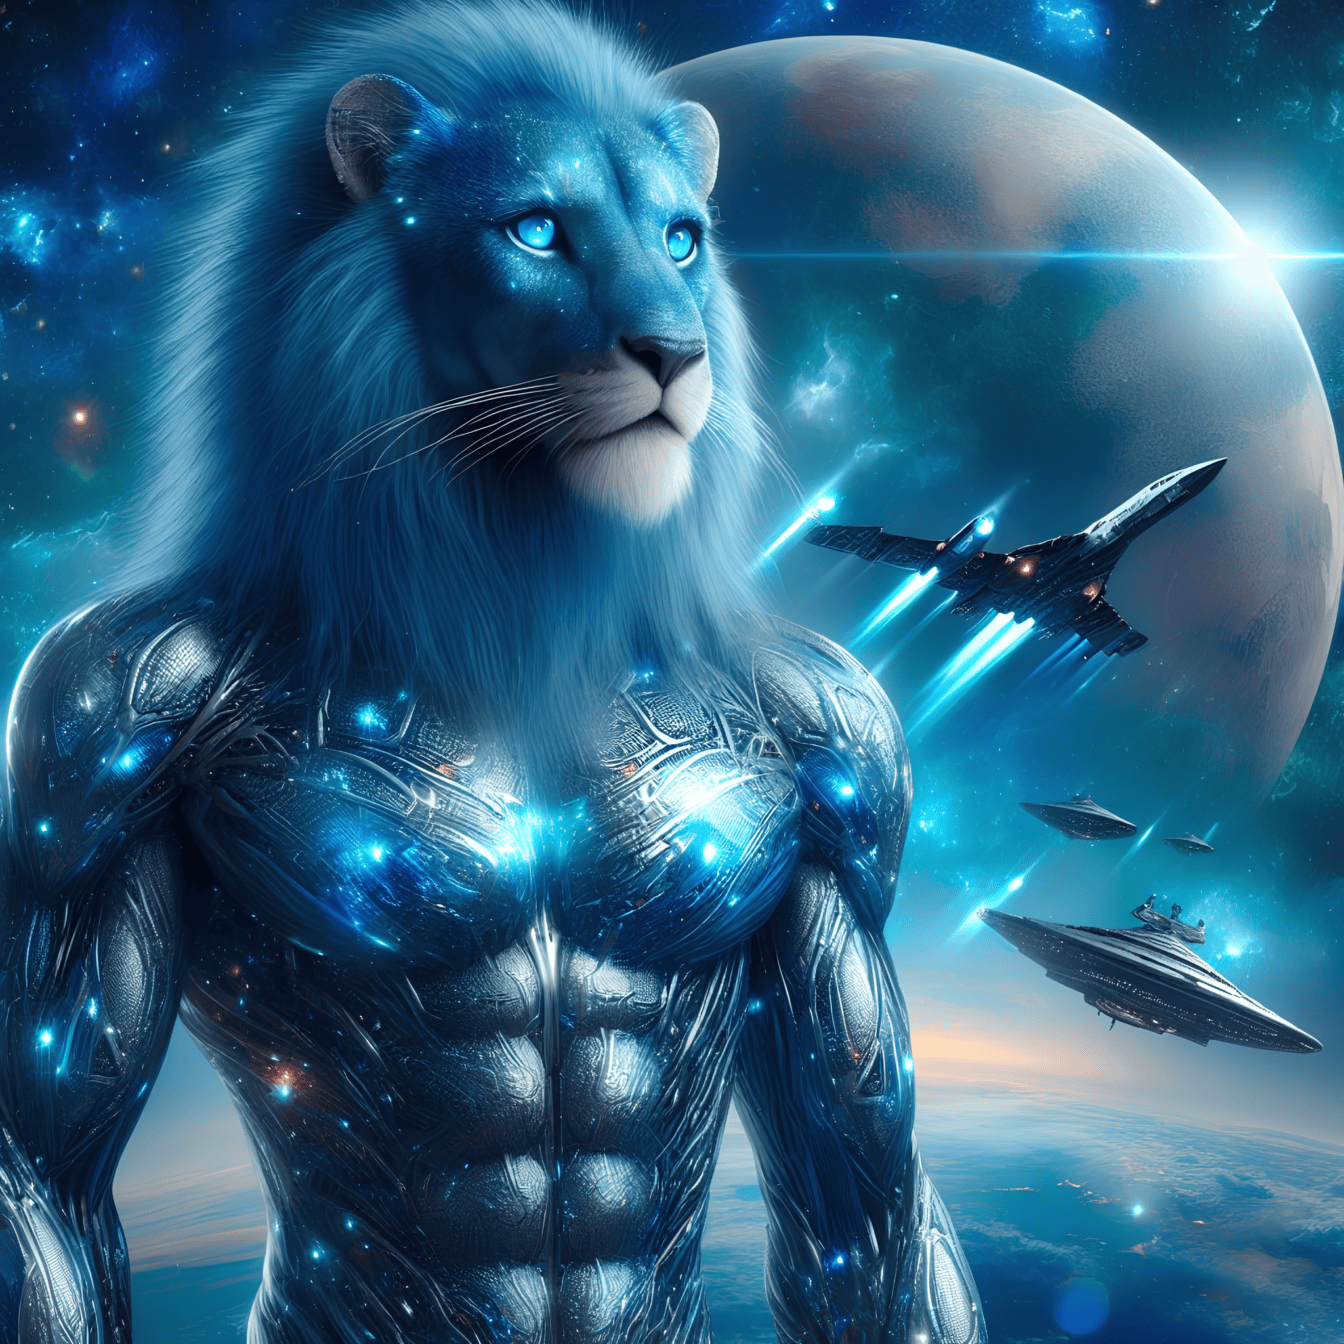 Mimozemský lev-kyborg s umelou inteligenciou, humanoidný mimozemšťan s bojovou vesmírnou loďou v pozadí